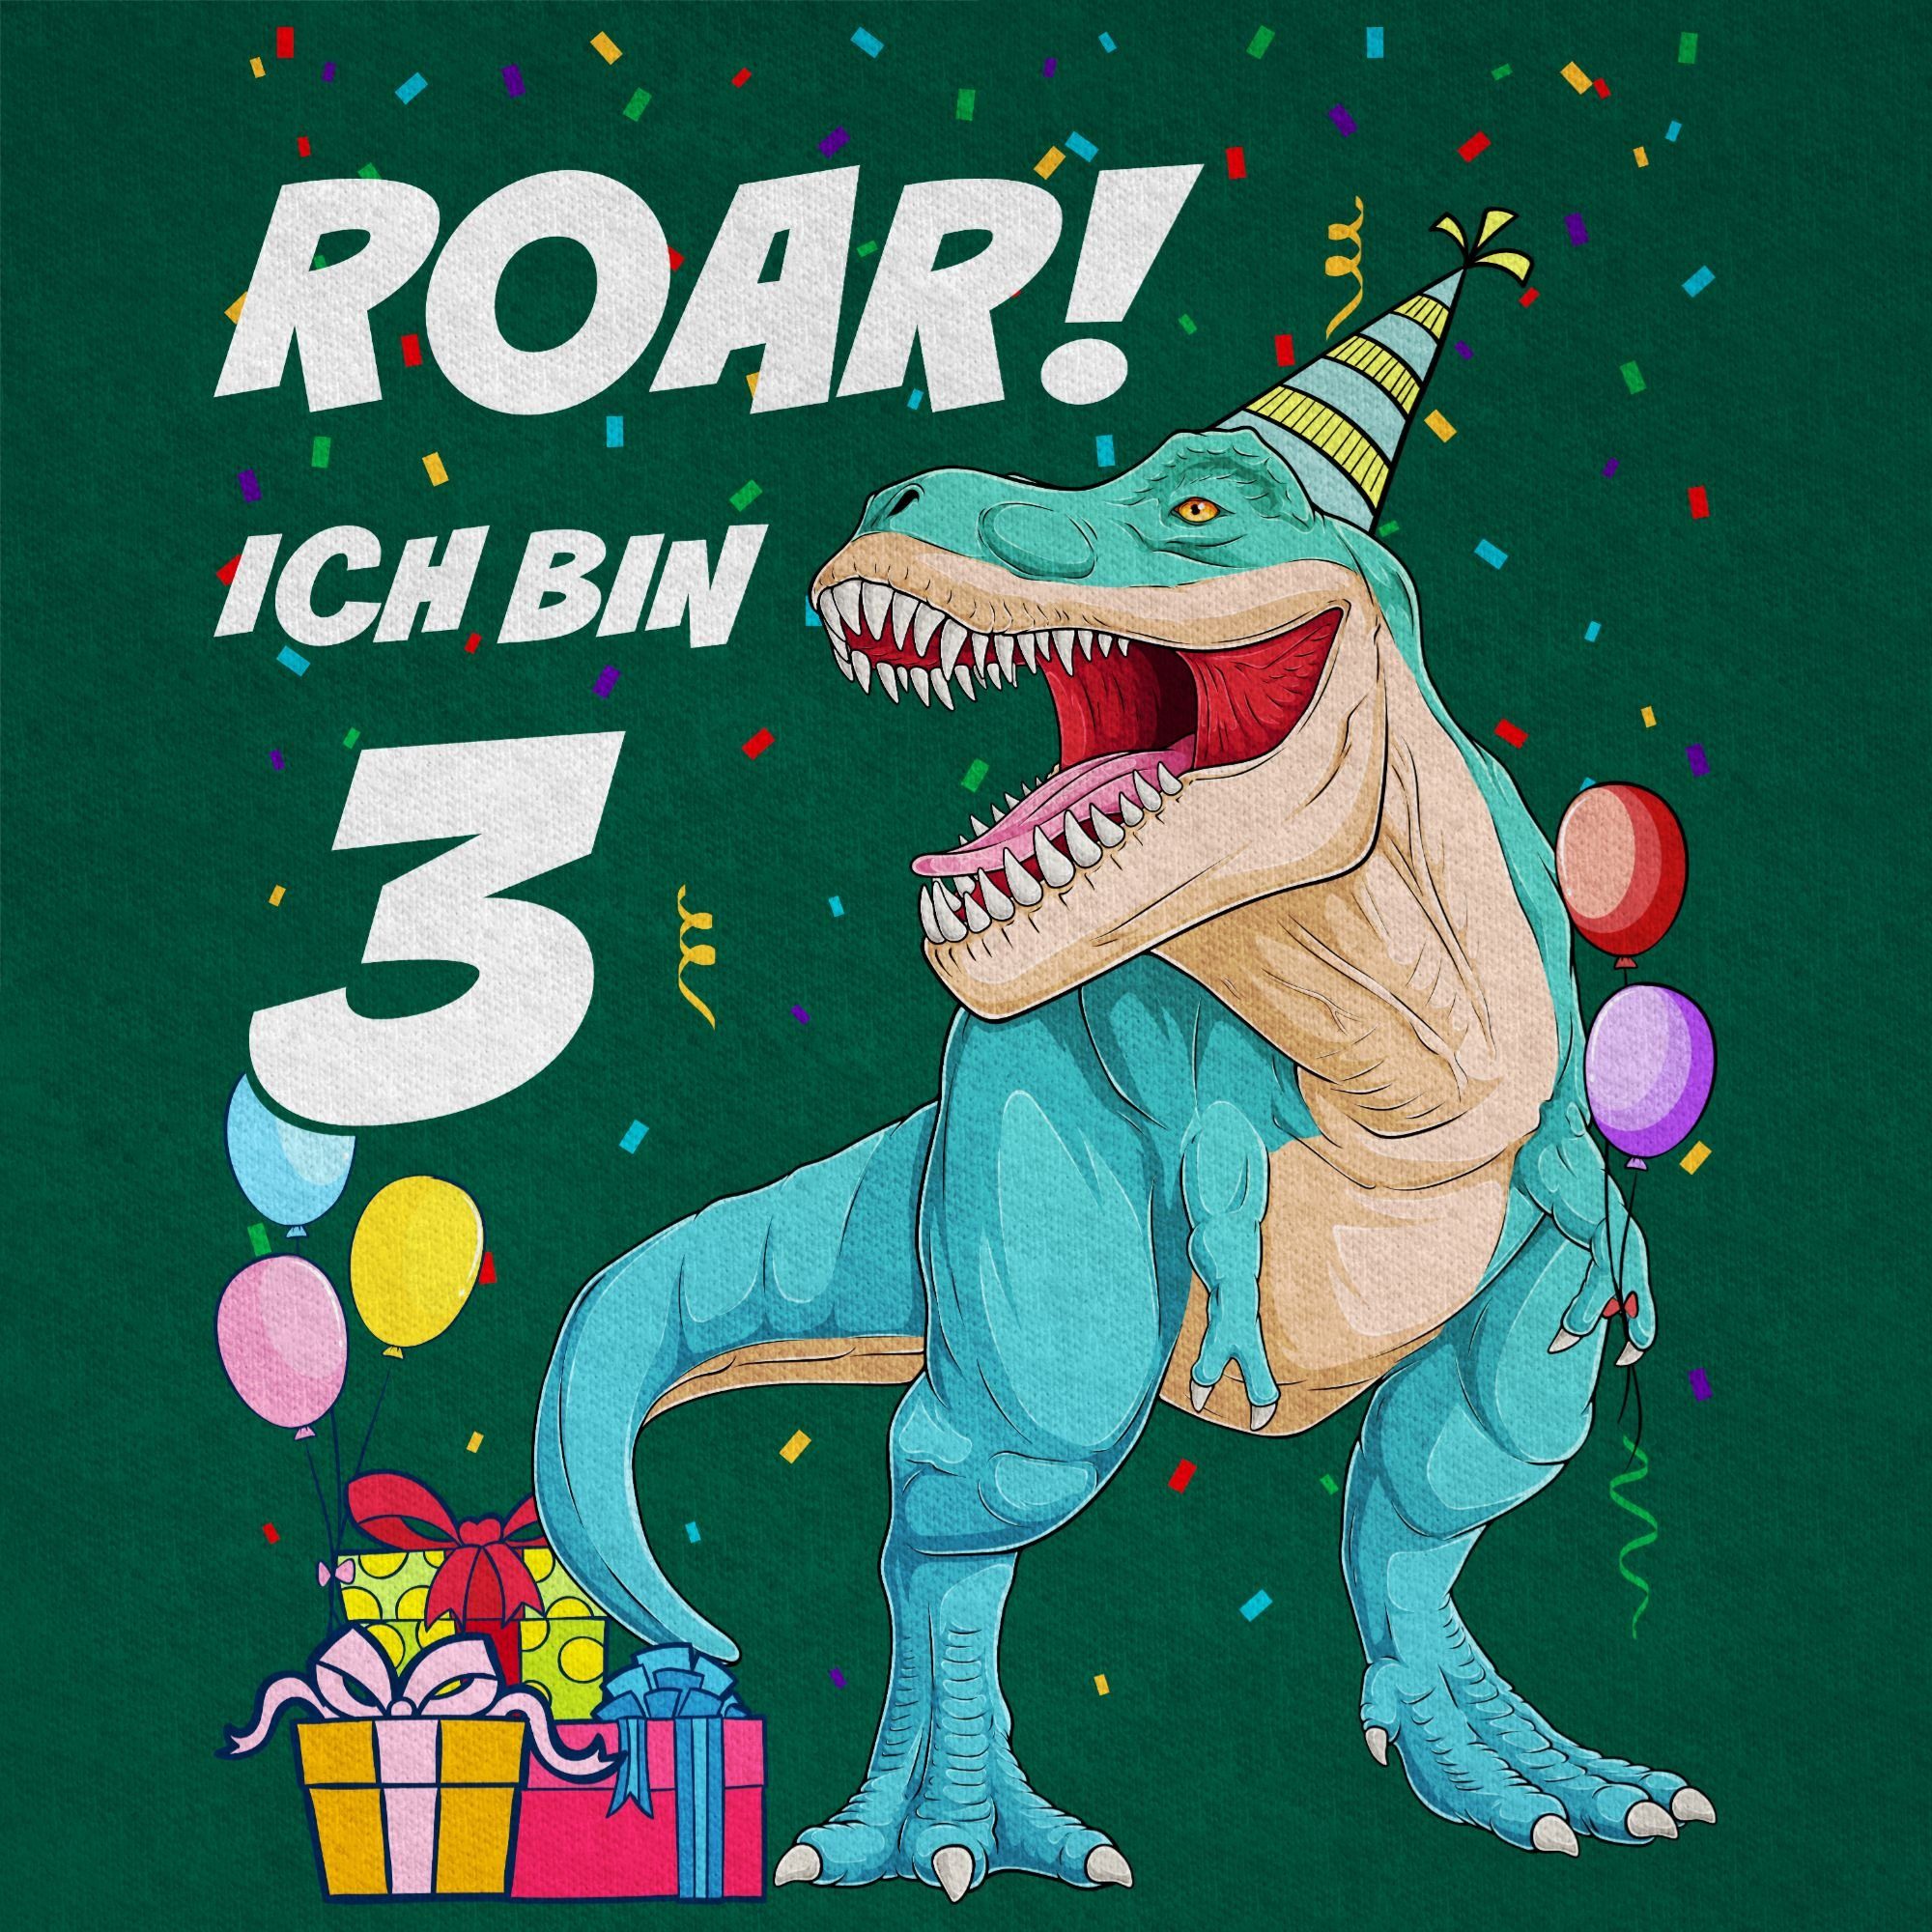 Shirtracer T-Shirt T-Rex Tannengrün 01 Dinosaurier 3 Dino 3. - bin Ich Geburtstag Jahre